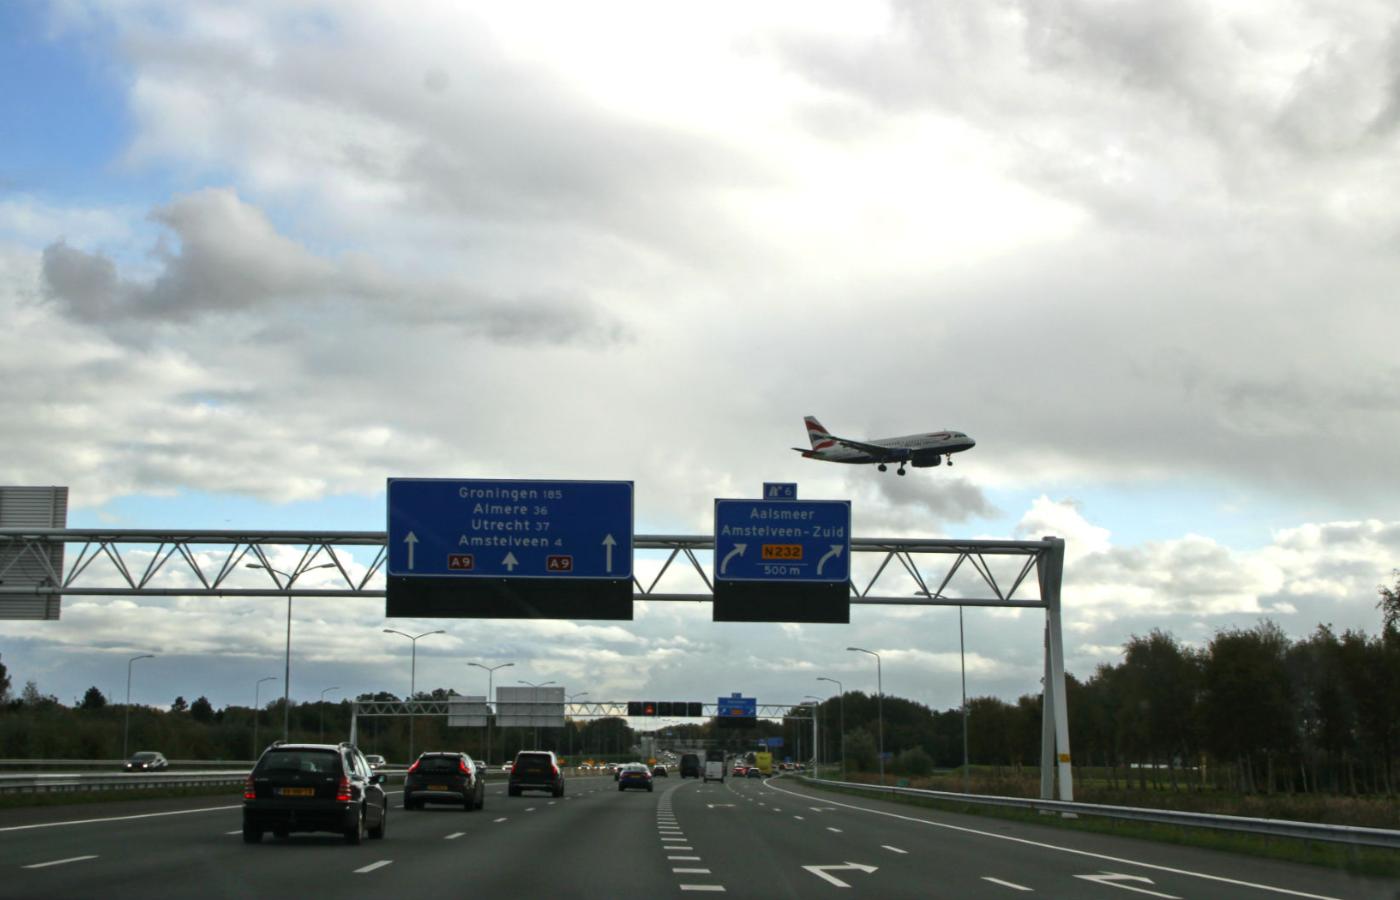 Holandia ogranicza maksymalną dopuszczalną prędkość pojazdów na autostradach ze 130 km na godzinę do setki.